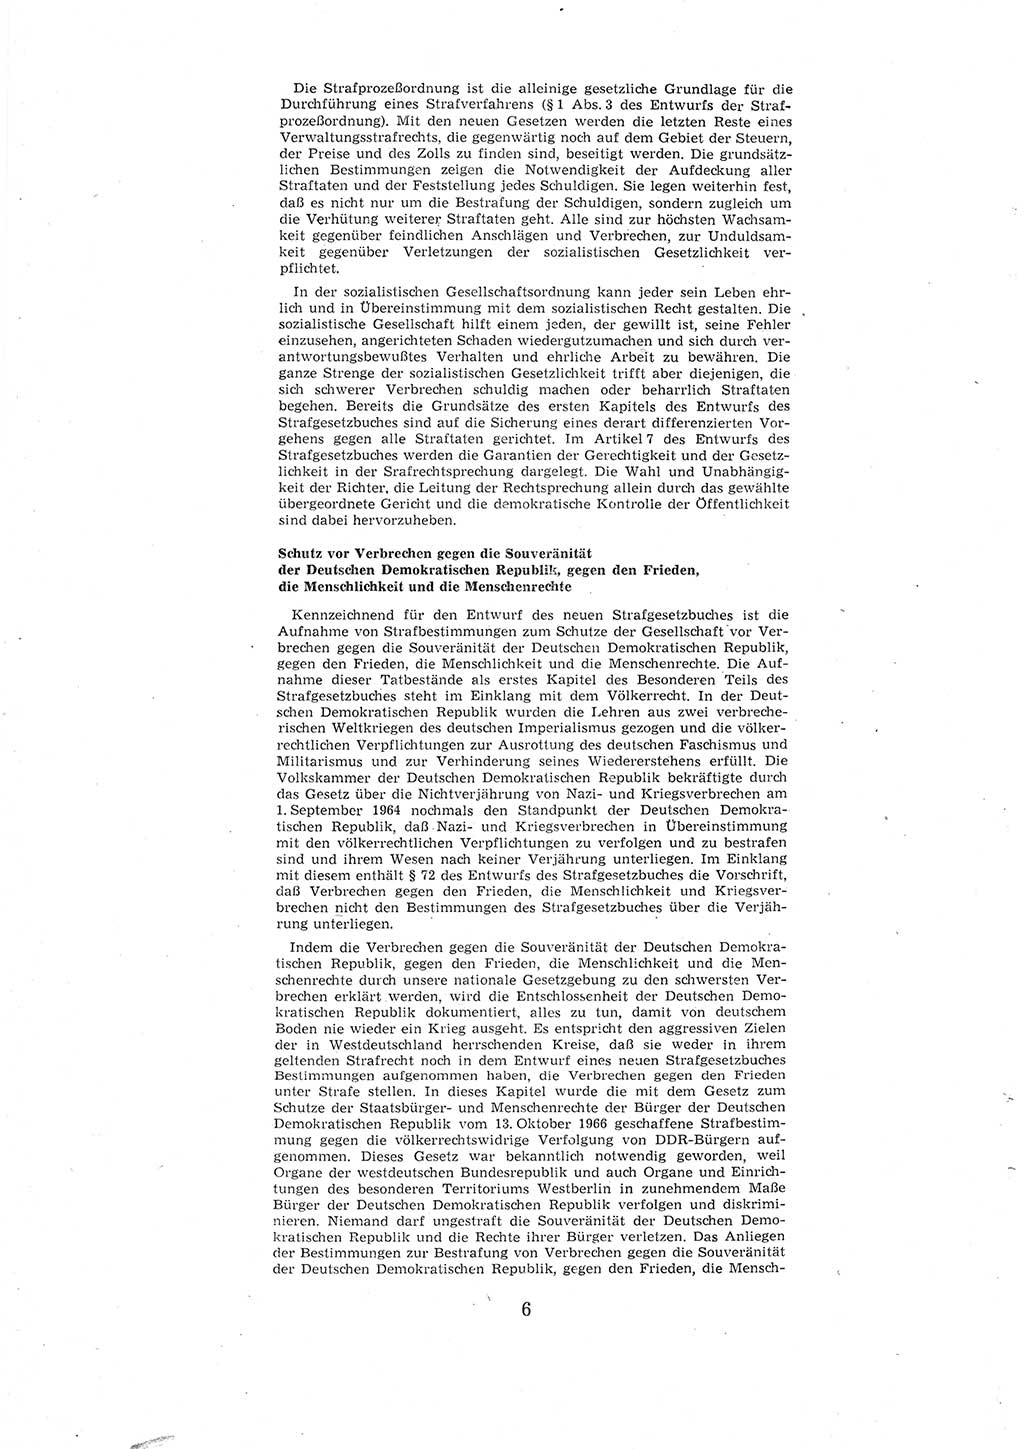 Entwurf des Strafgesetzbuches (StGB) der Deutschen Demokratischen Republik (DDR) 1967, Seite 6 (Entw. StGB DDR 1967, S. 6)